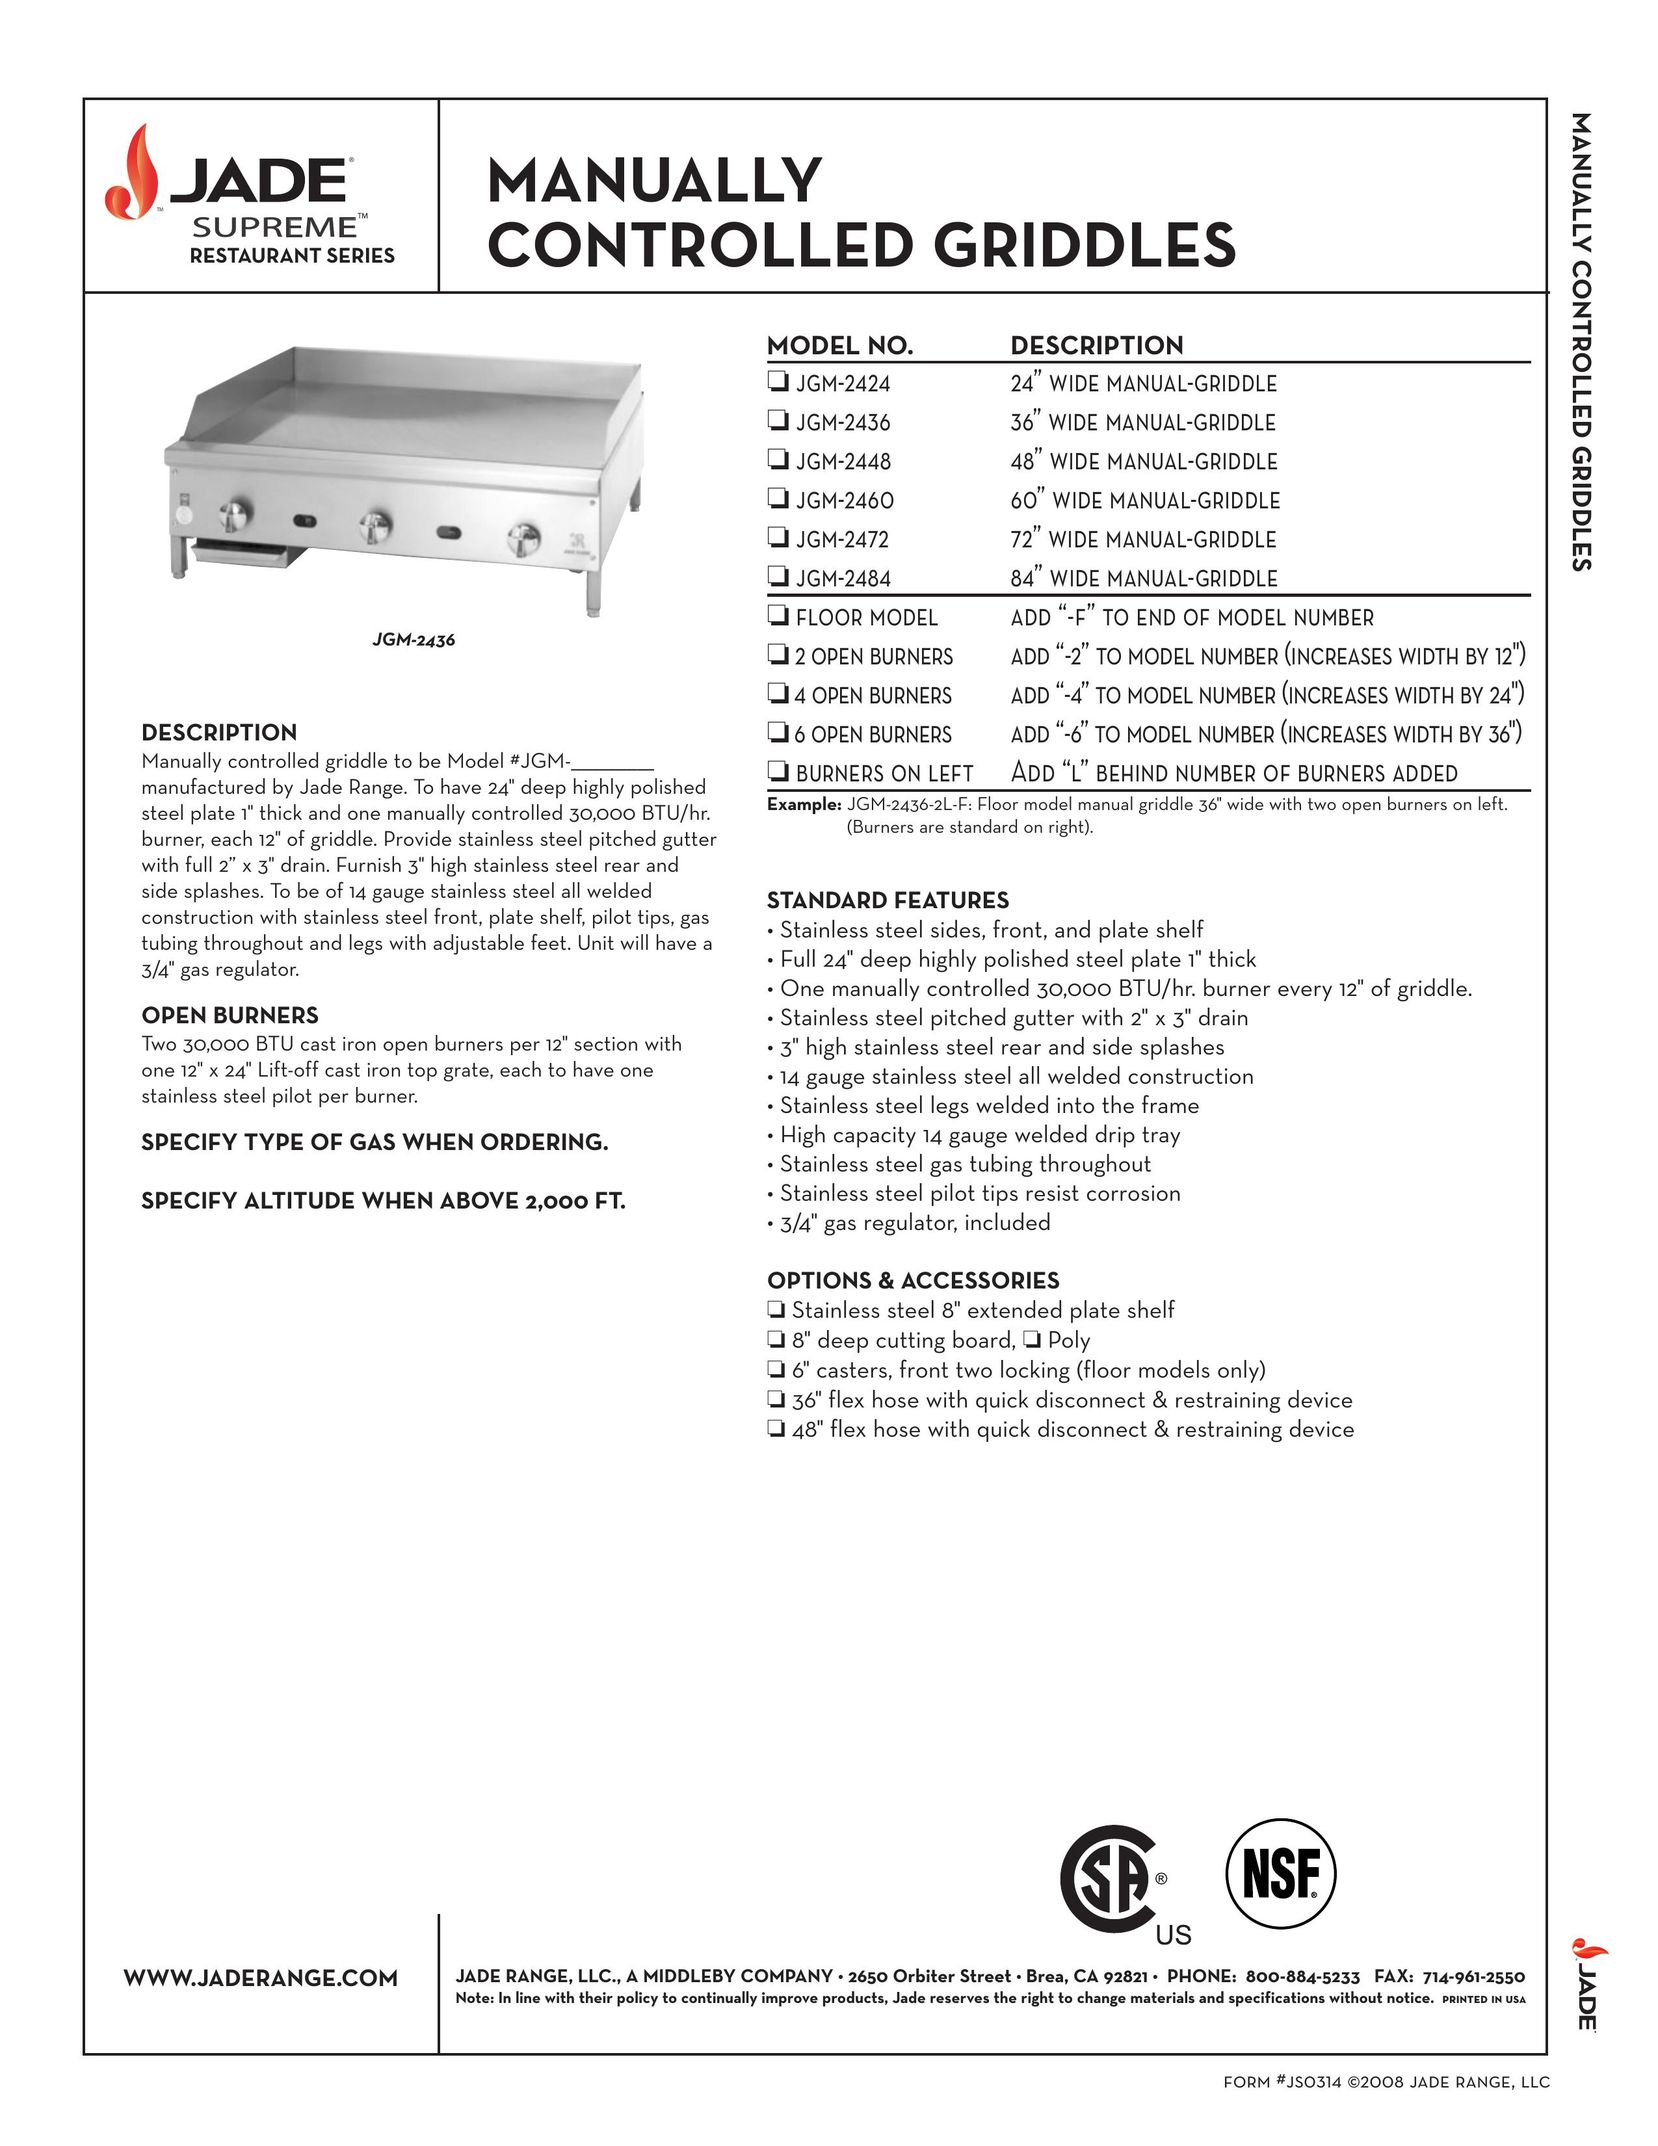 Jade Range JGM-2484 Griddle User Manual